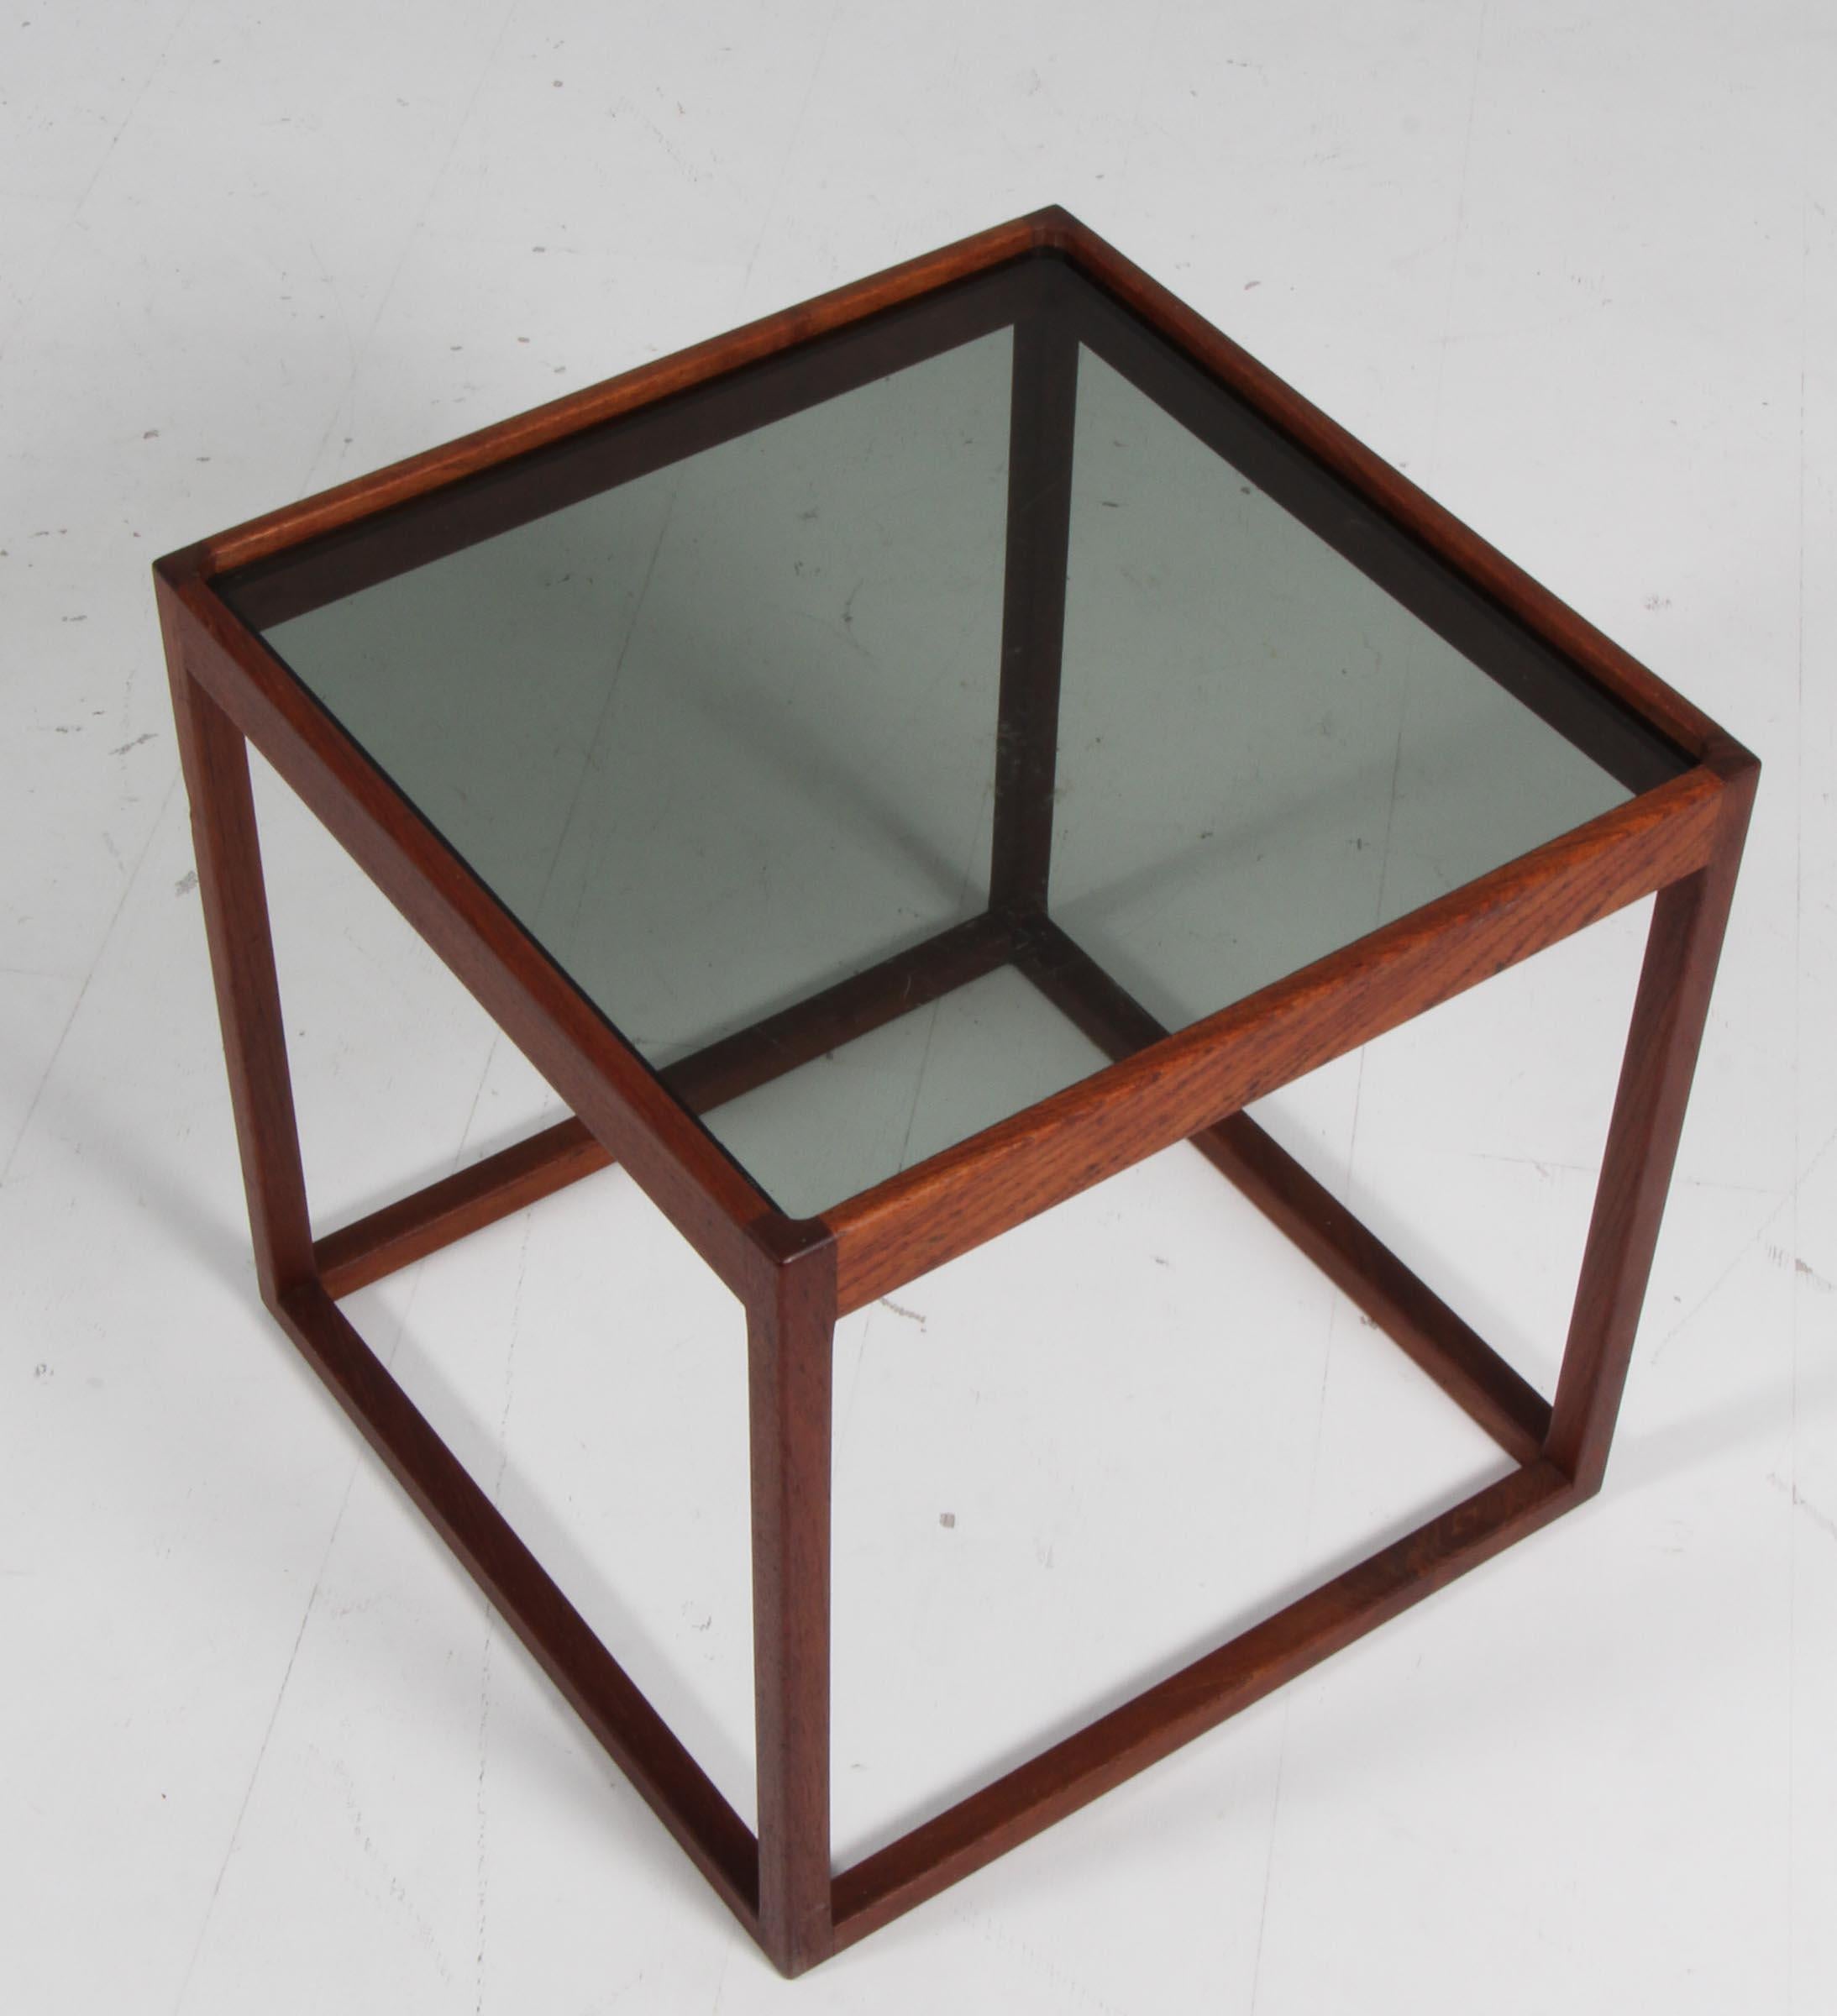 Table cubique Kurt Østervig en teck, avec plateau en verre fumé.

Fabriqué dans les années 1960